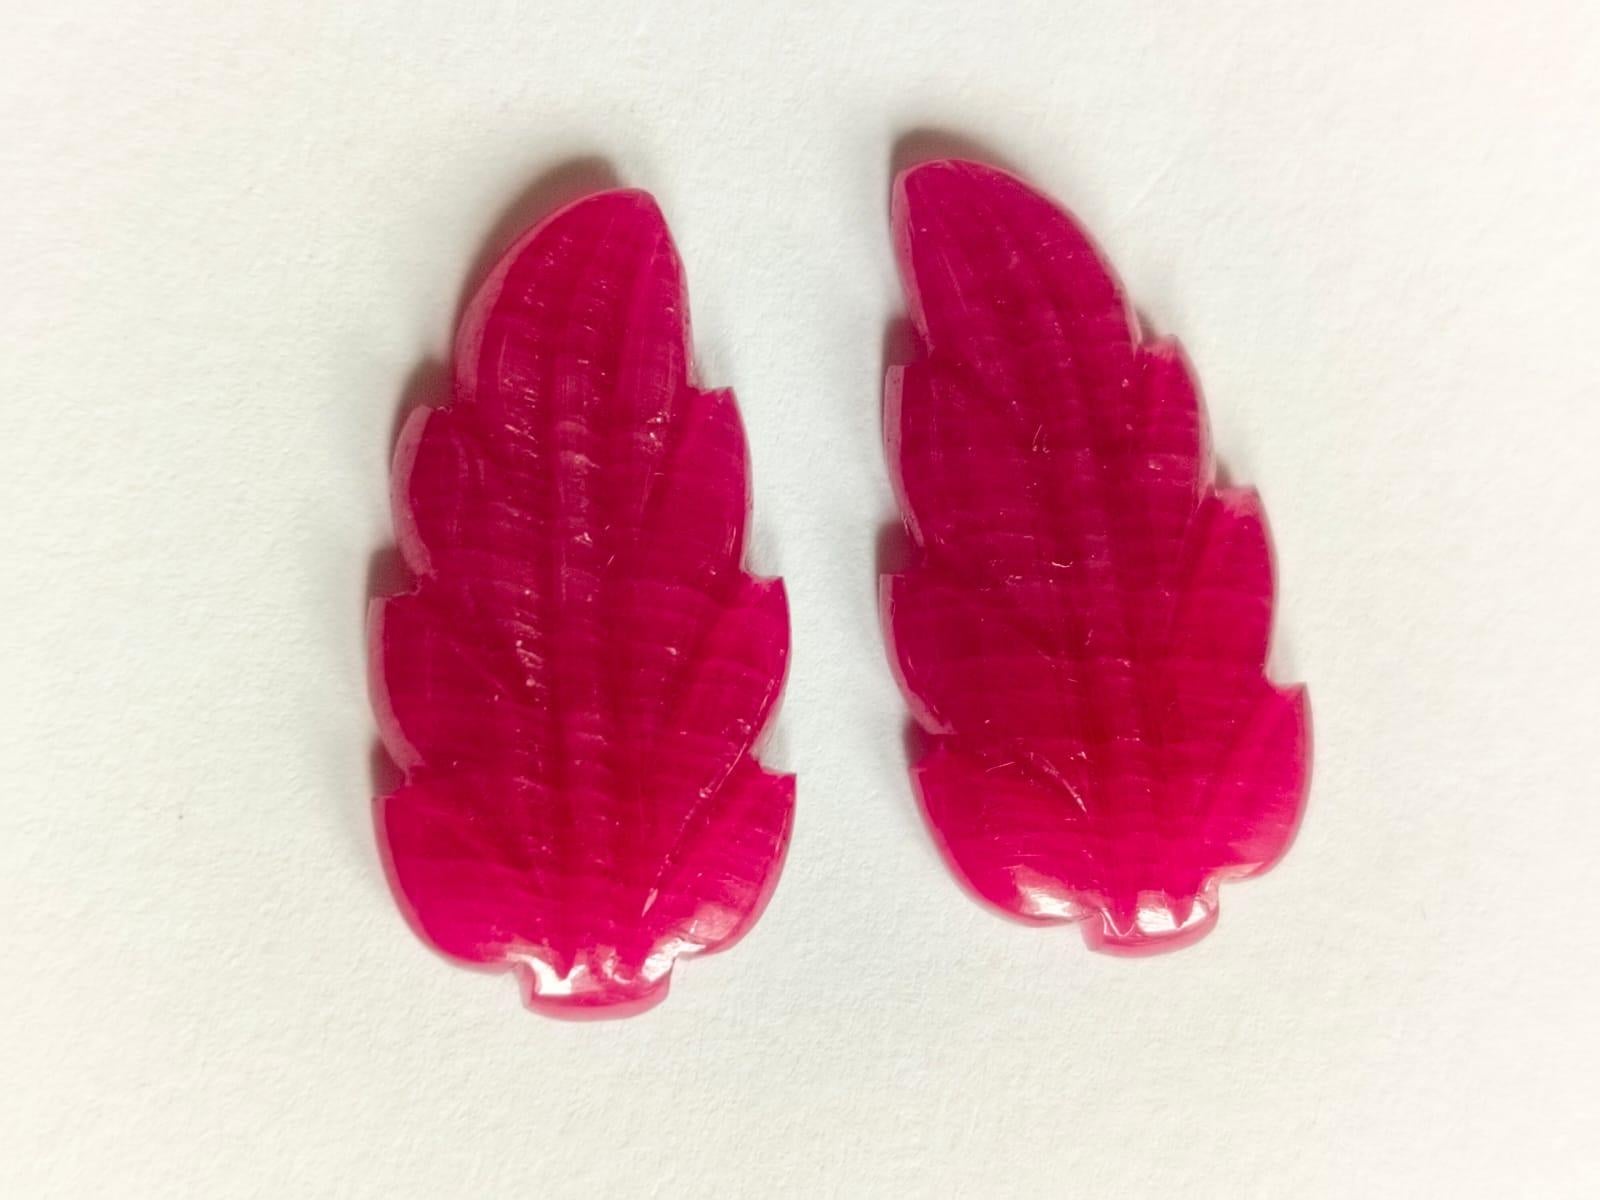 Tapered Baguette Elegant 21.75 Carat Ruby Carving Leaf Shape Pair Loose Gemstone  For Sale